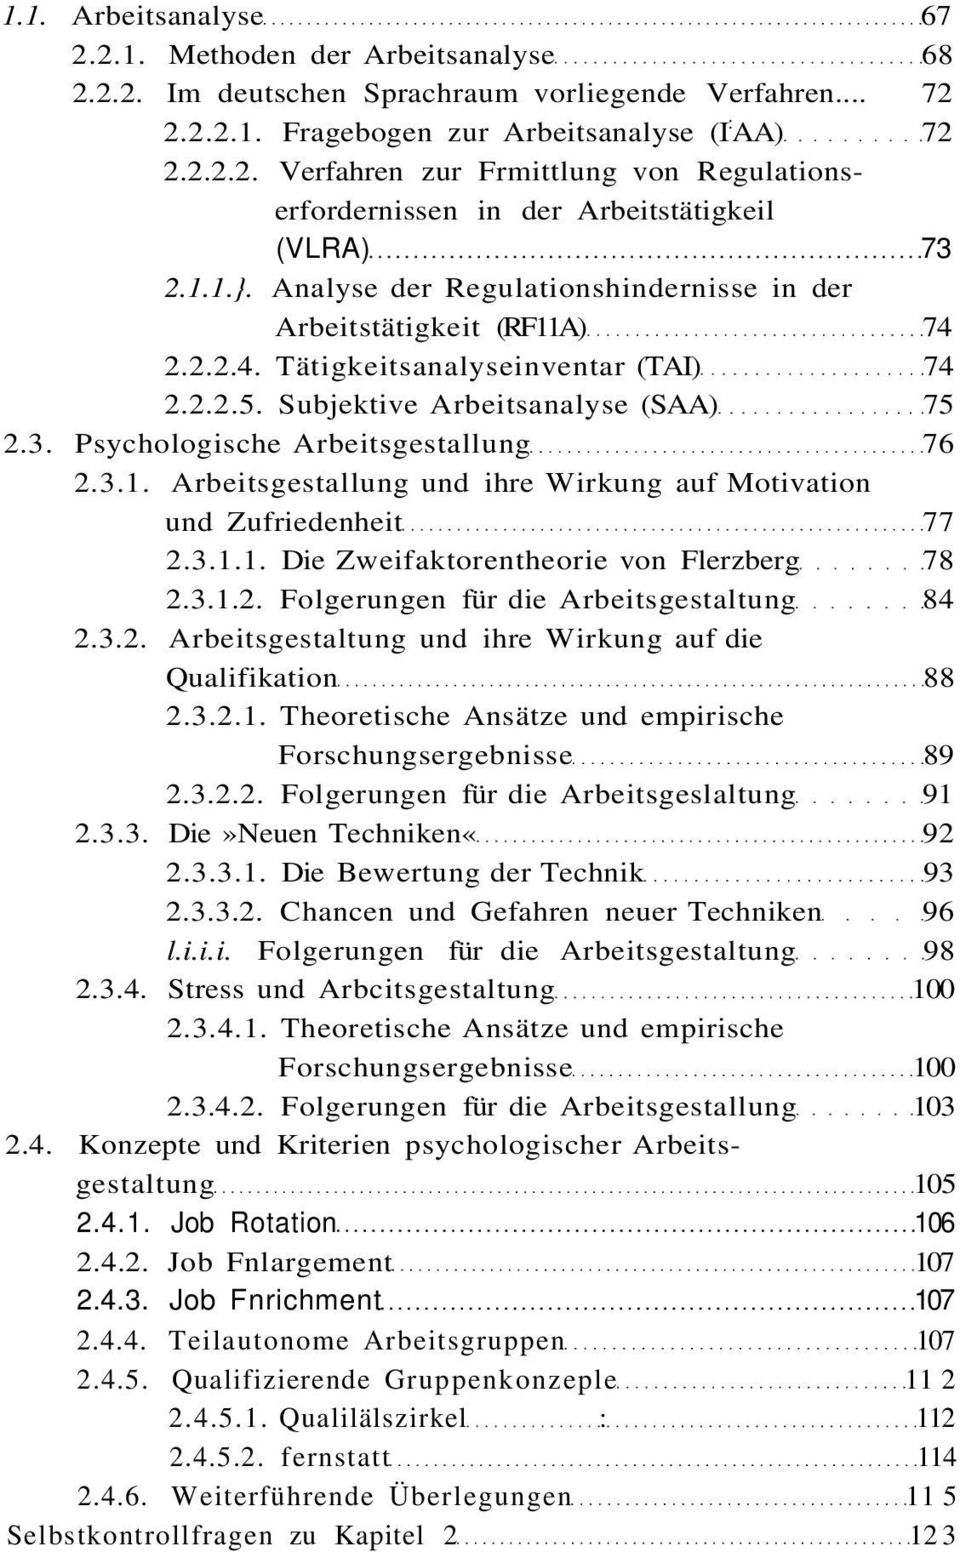 Psychologische Arbeitsgestallung 76 2.3.1. Arbeitsgestallung und ihre Wirkung auf Motivation und Zufriedenheit 77 2.3.1.1. Die Zweifaktorentheorie von Flerzberg 78 2.3.1.2. Folgerungen für die Arbeitsgestaltung 84 2.